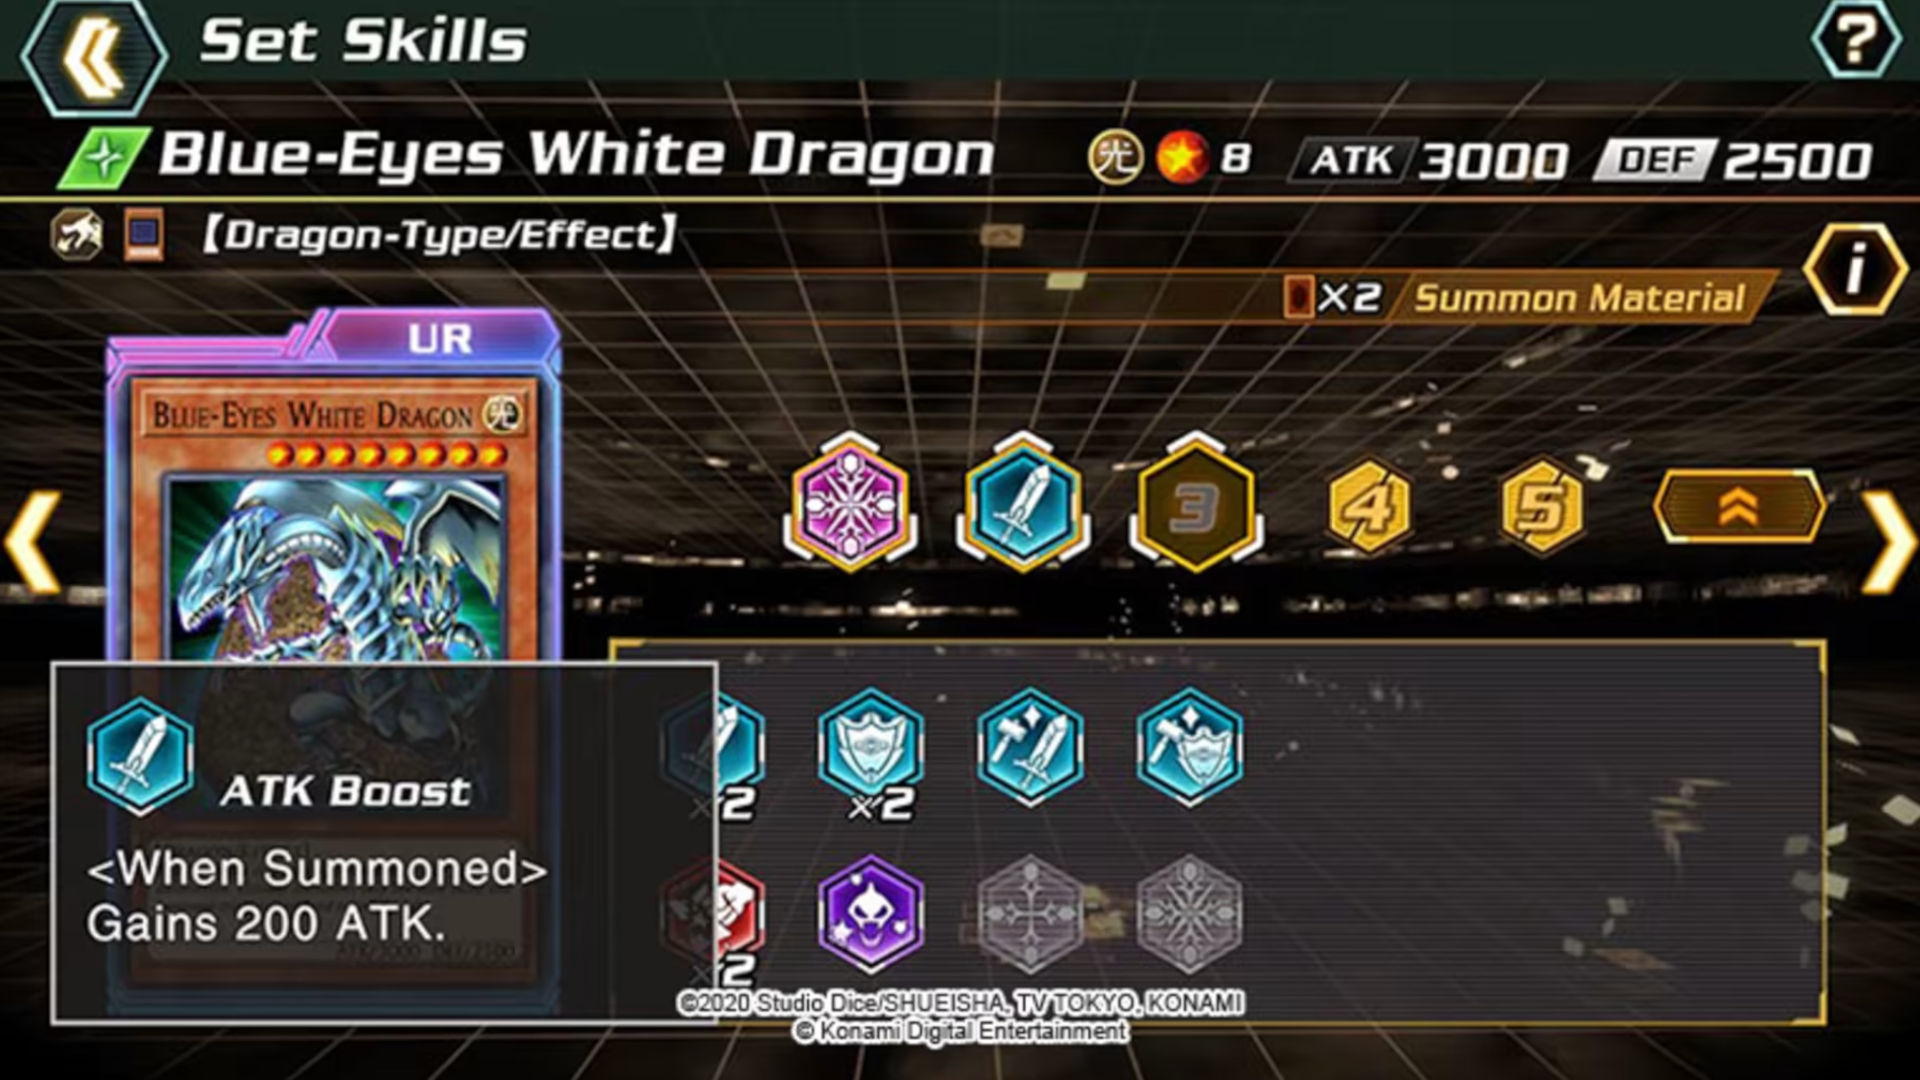 Zrzut ekranu menu umiejętności z Yu-Gi-Oh!  Pojedynek krzyżowy z niebieskookim białym smokiem otrzymującym aktualizację